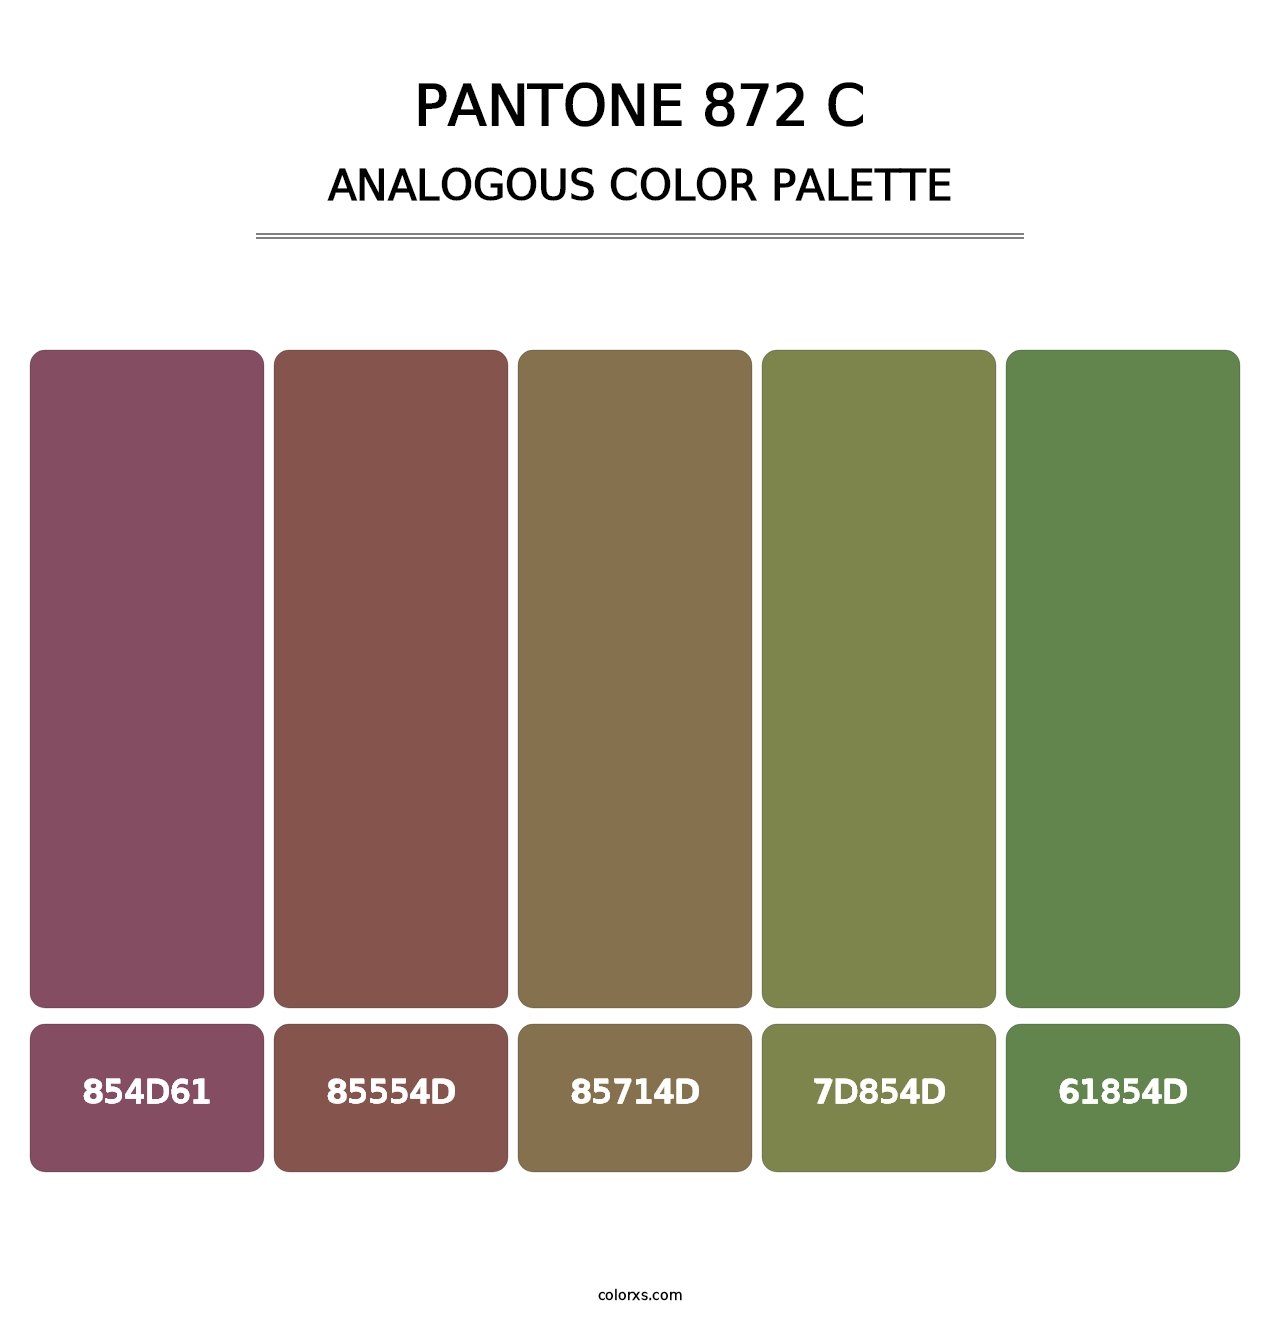 PANTONE 872 C - Analogous Color Palette